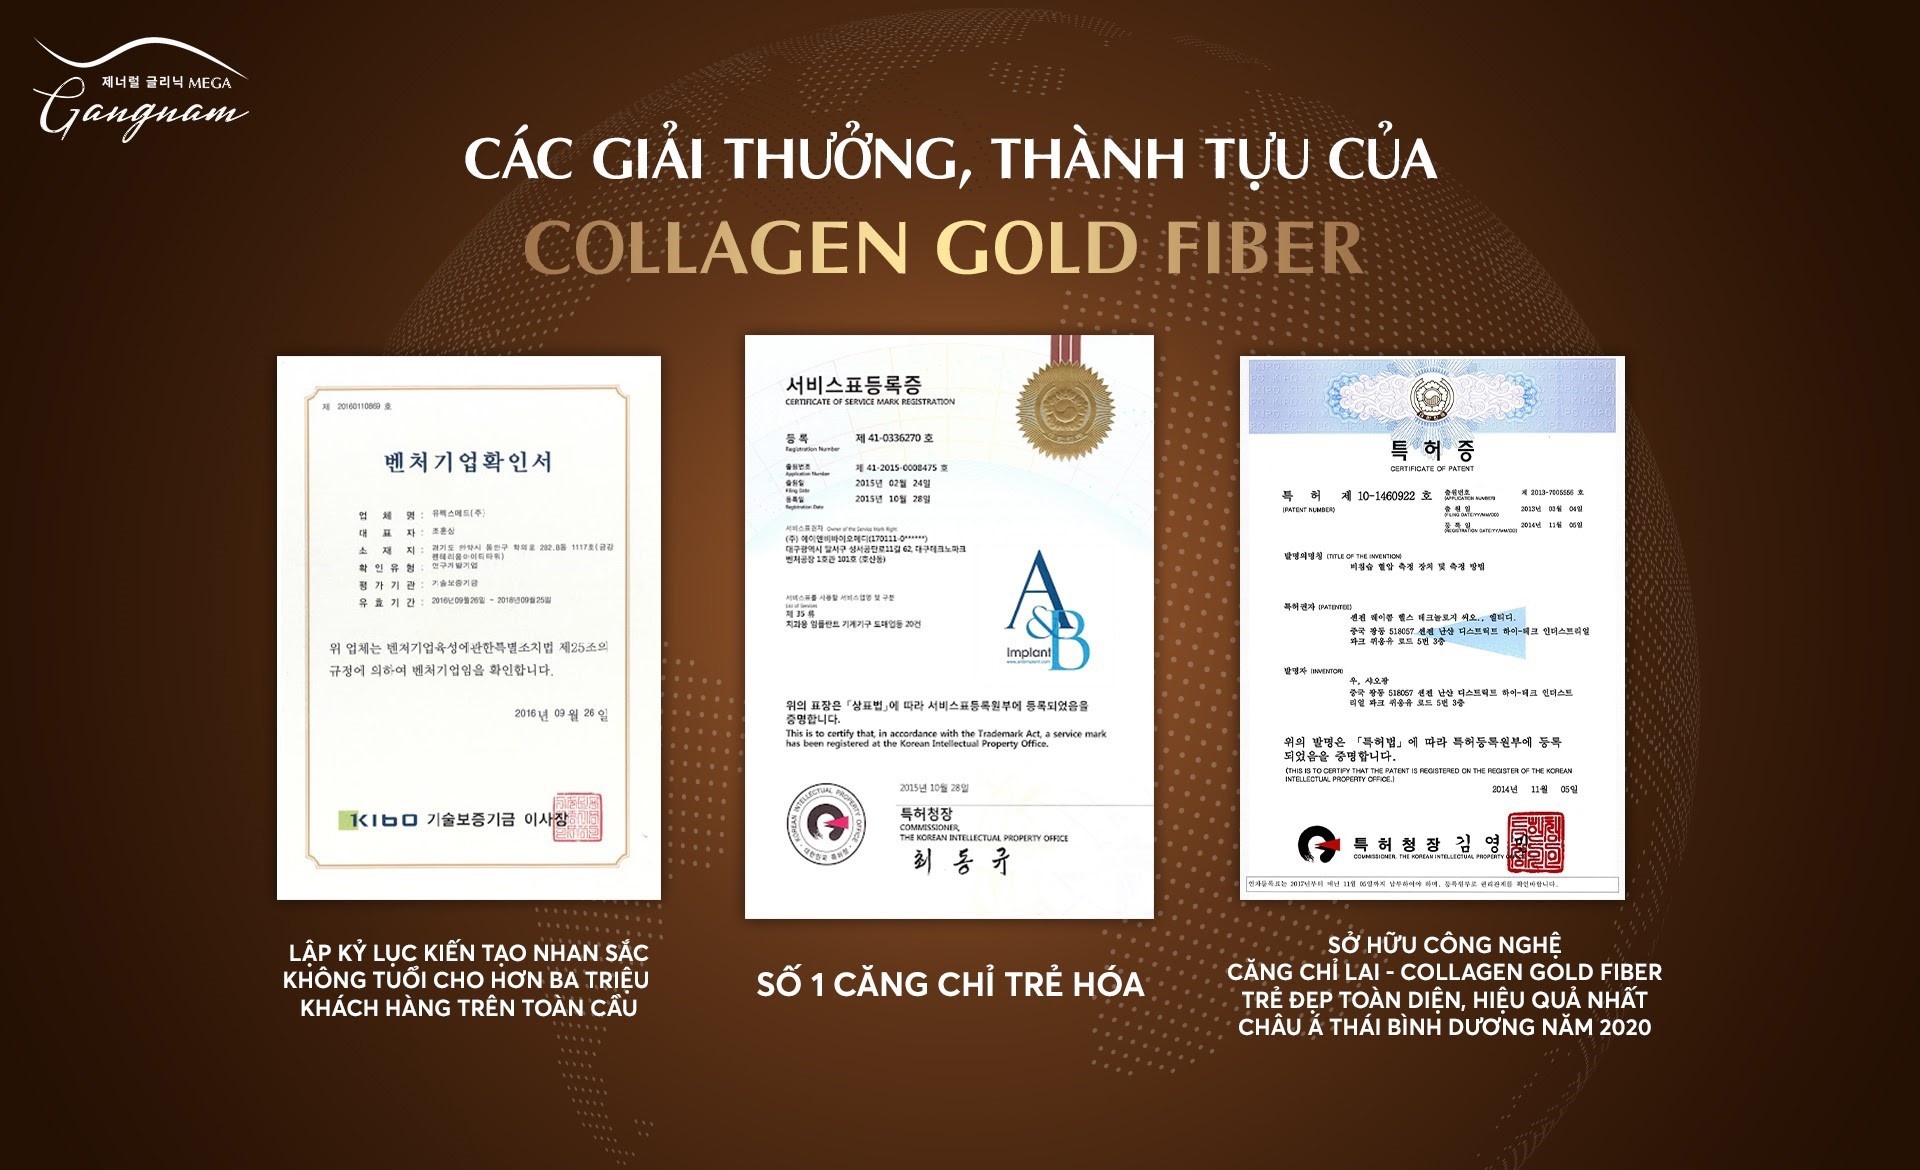 Căng chỉ Collagen Gold Fiber nhận được các giải thưởng, thành tựu tiêu biểu